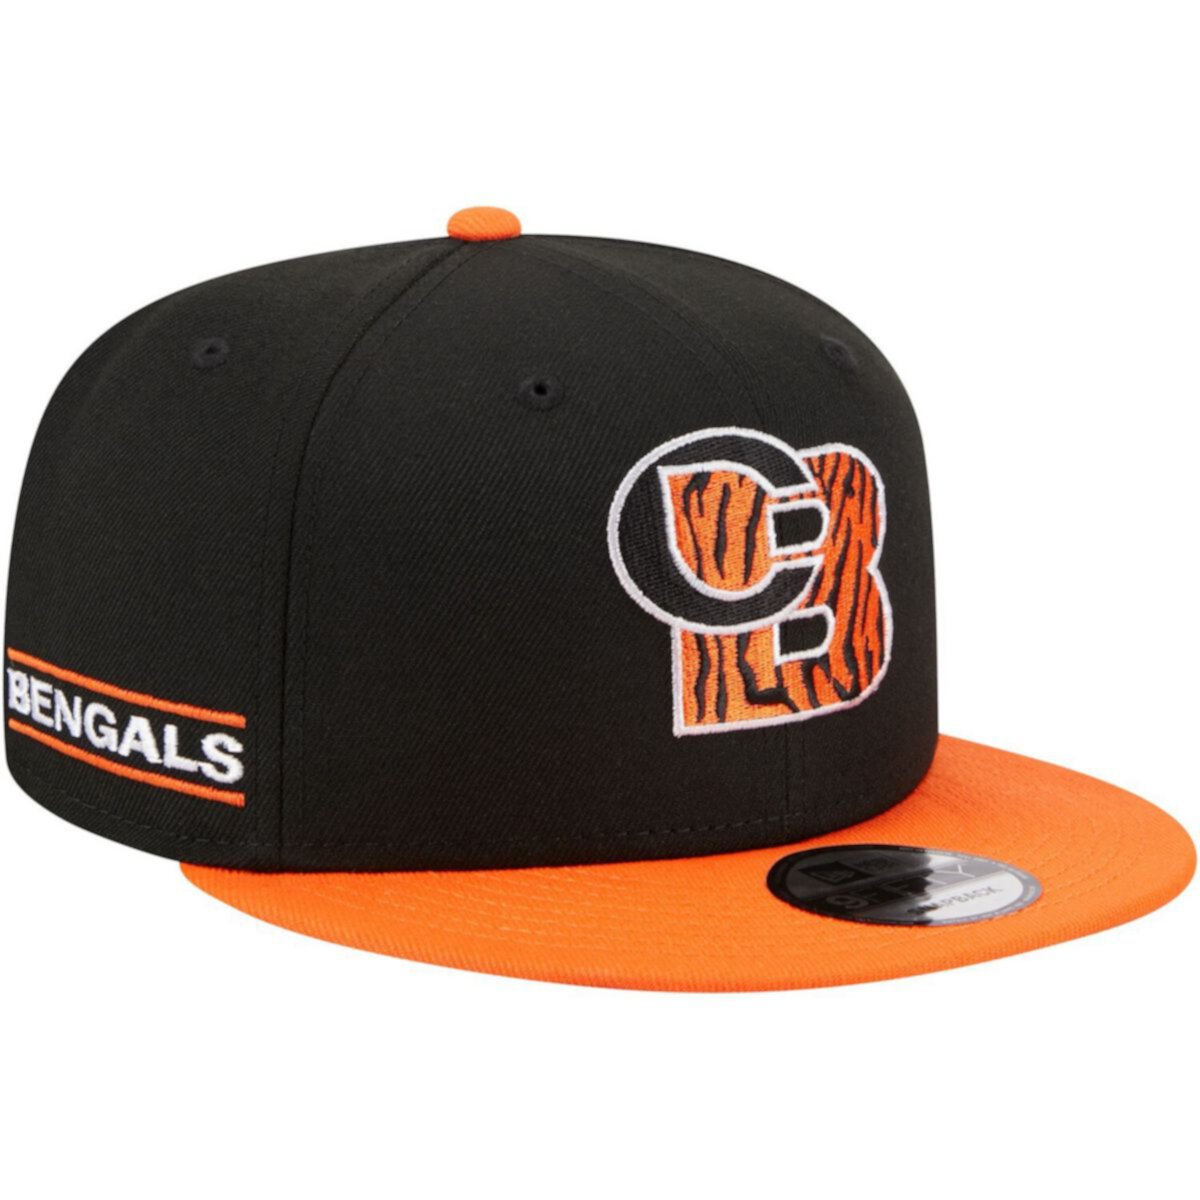 Мужская кепка New Era черного/оранжевого цвета Cincinnati Bengals City Originals 9FIFTY Snapback New Era x Staple